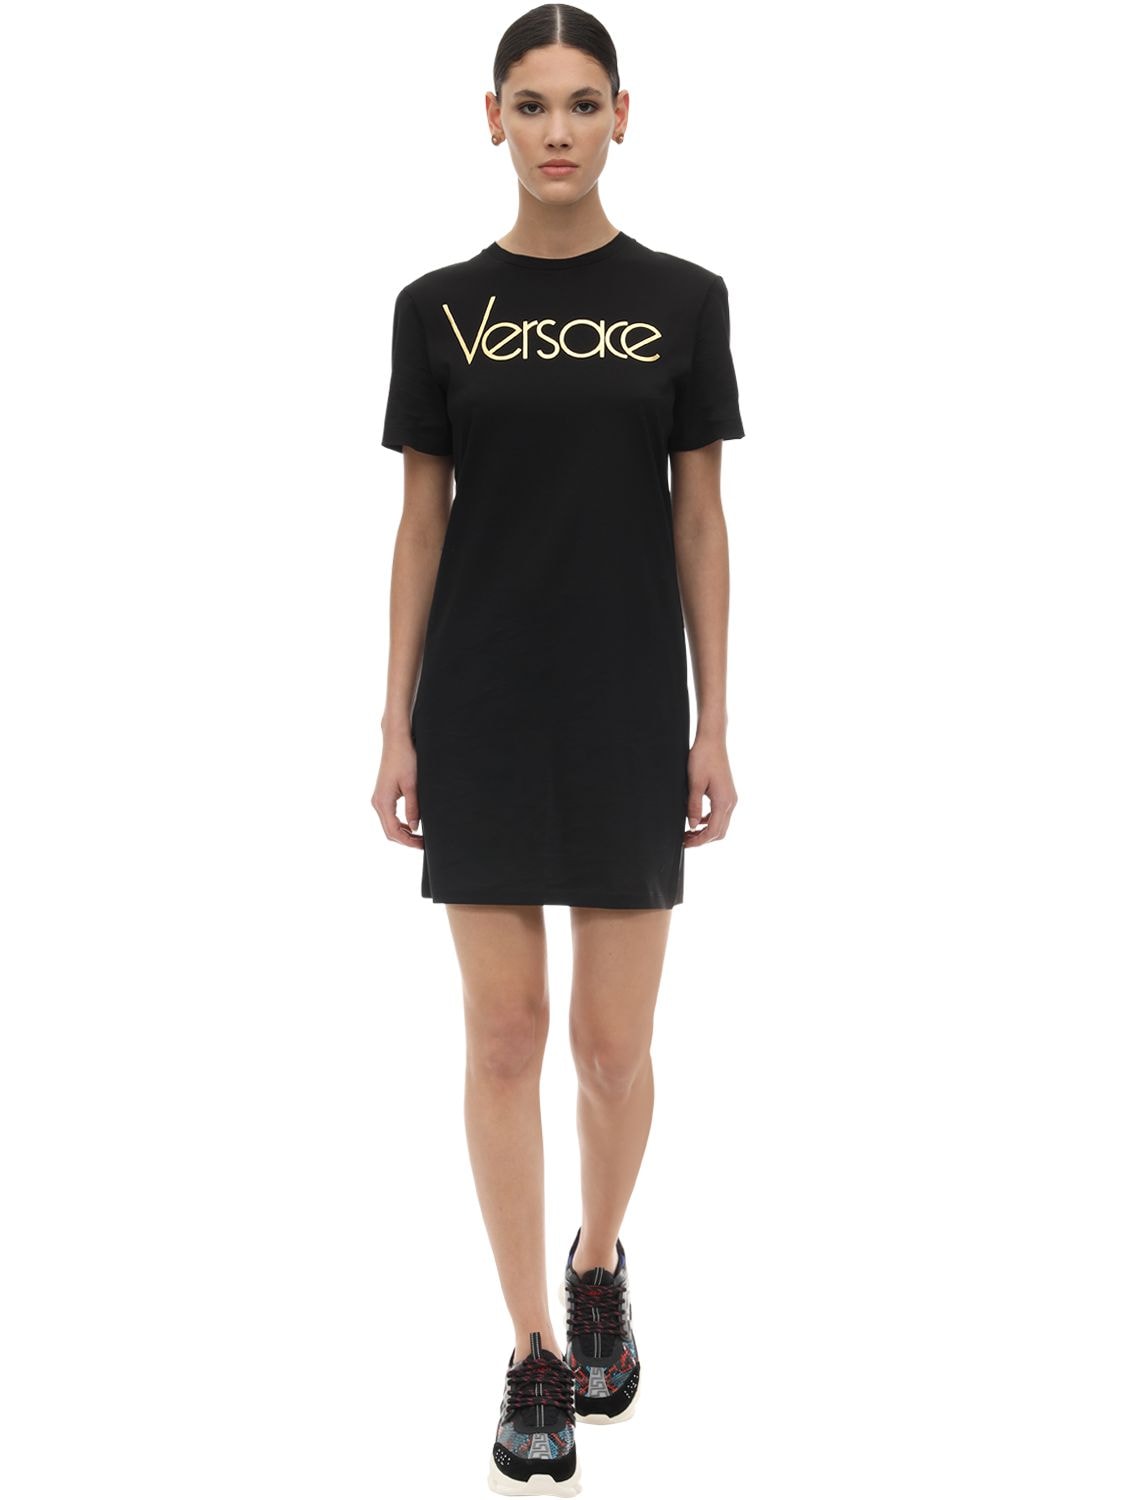 versace t shirt dress